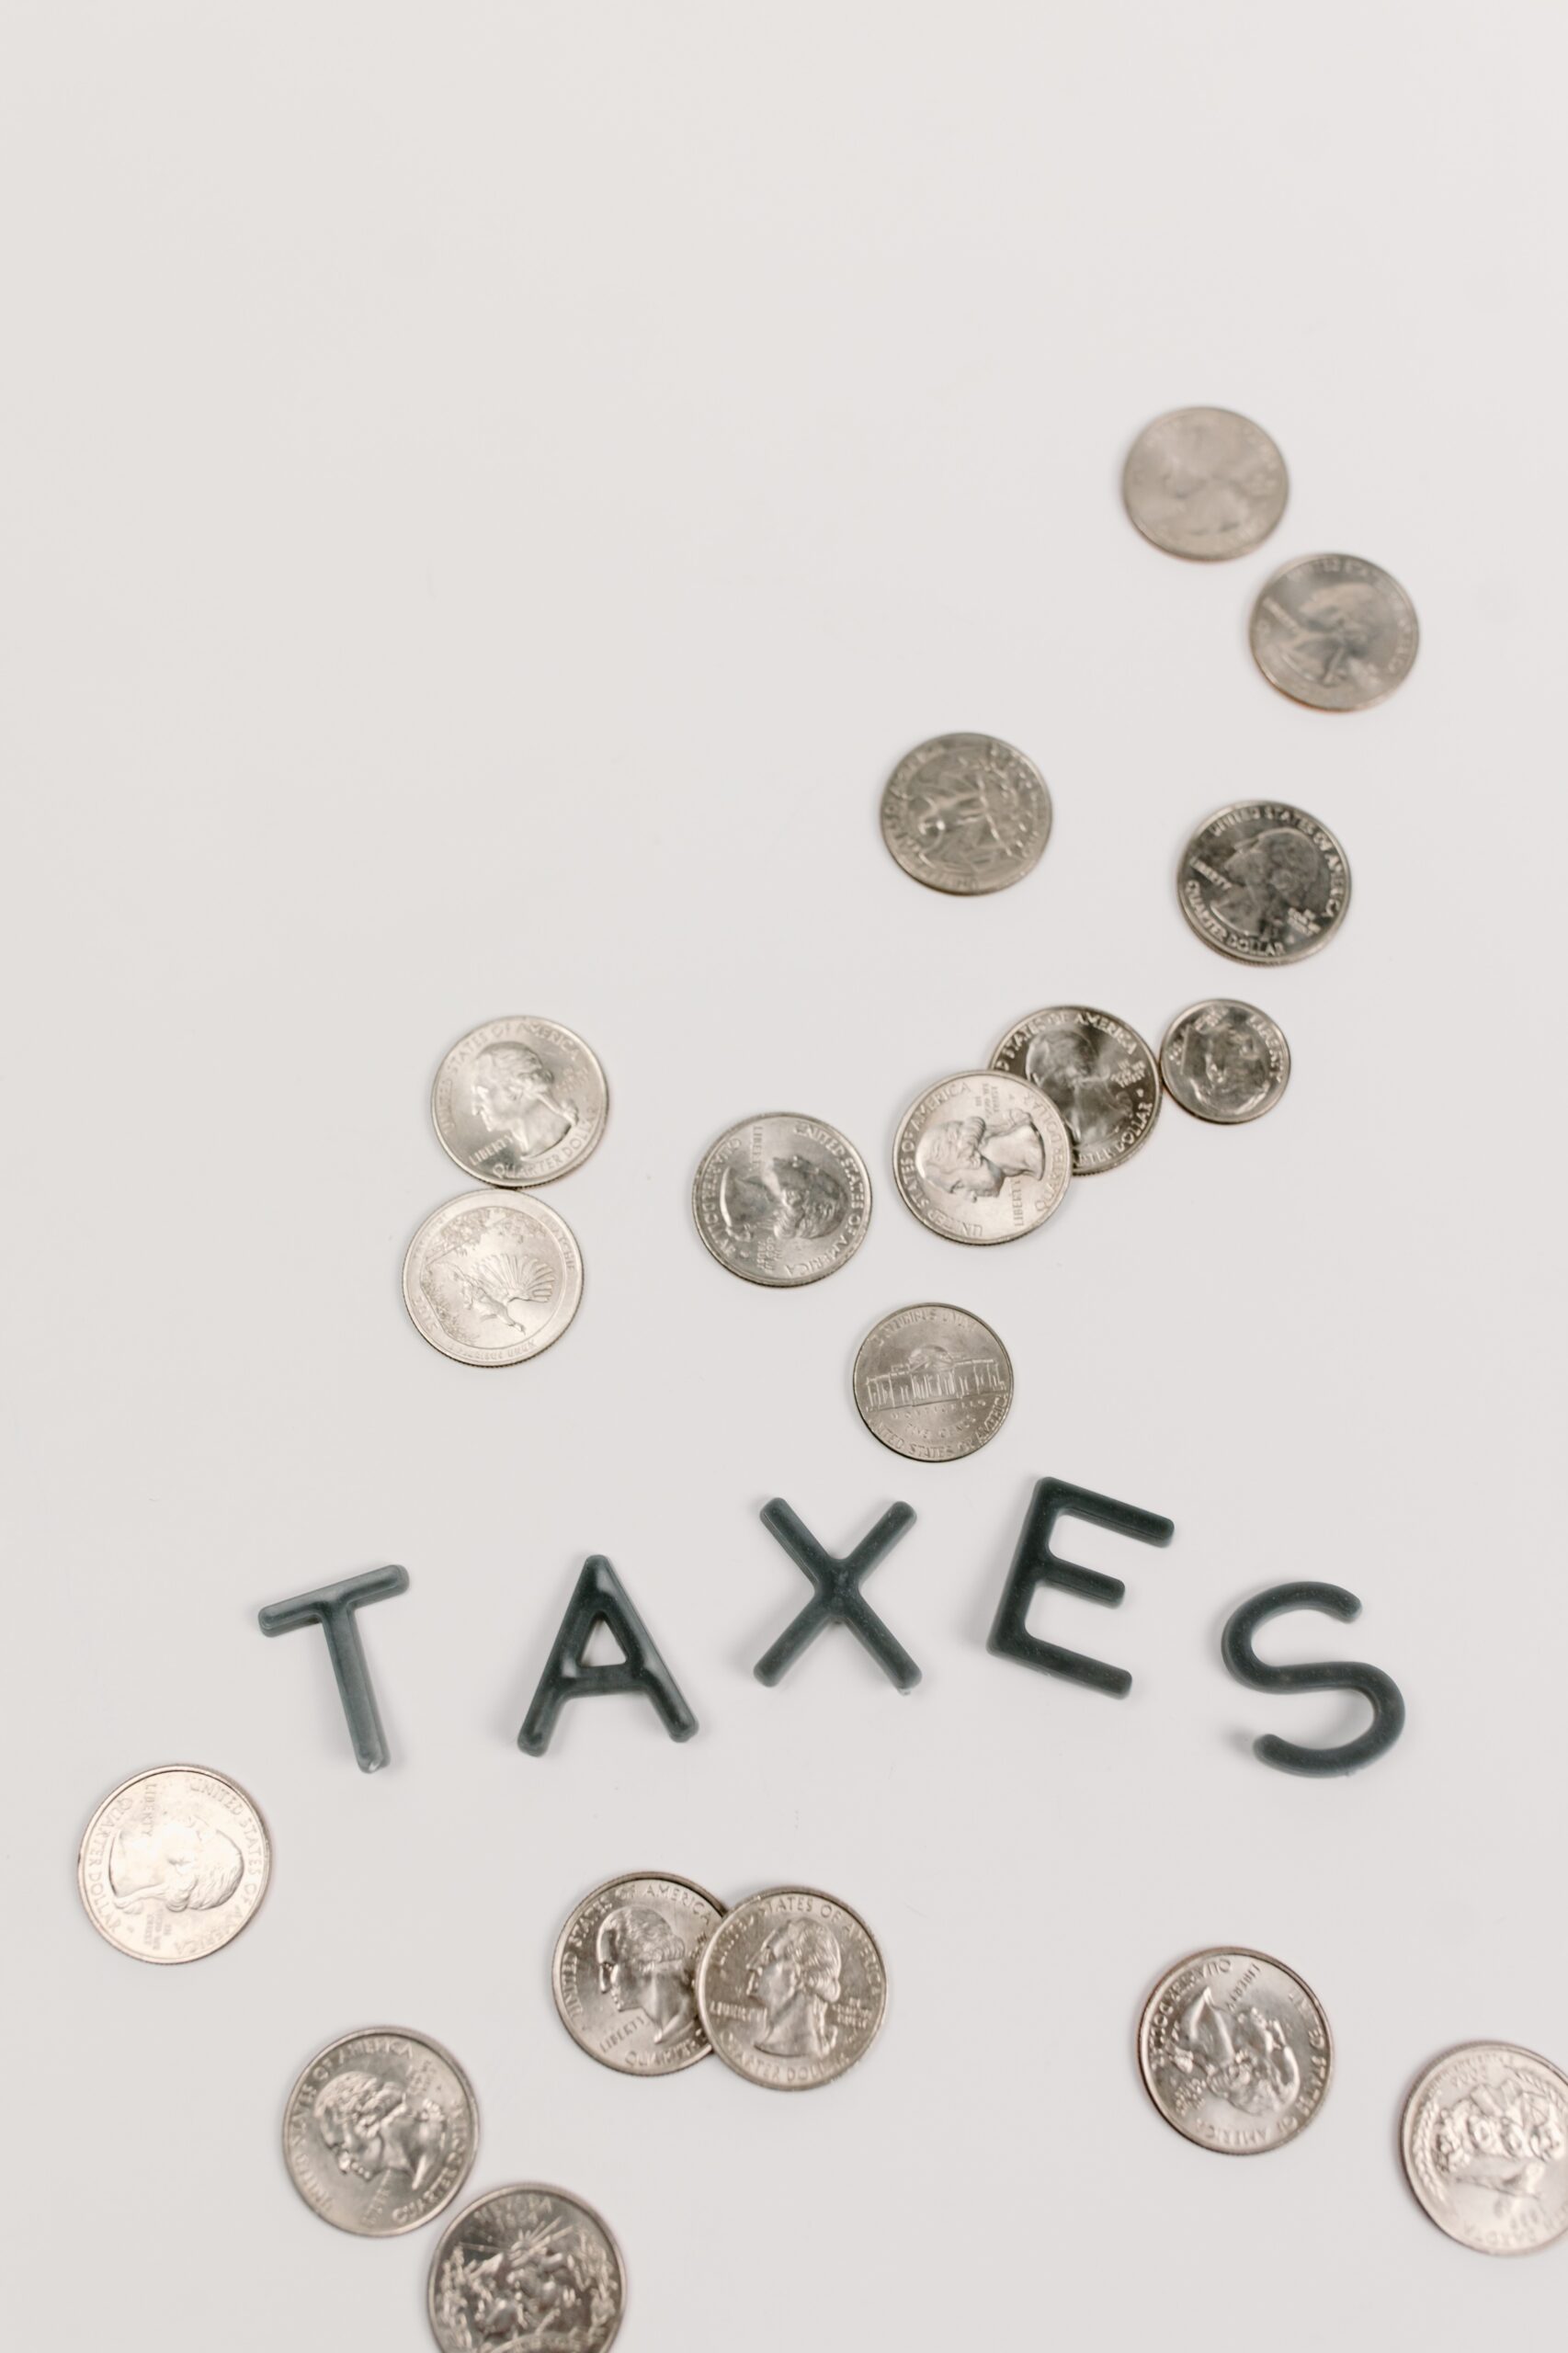 Wort Taxes auf einer weißen Fläche mit mehreren Münzen außenrum